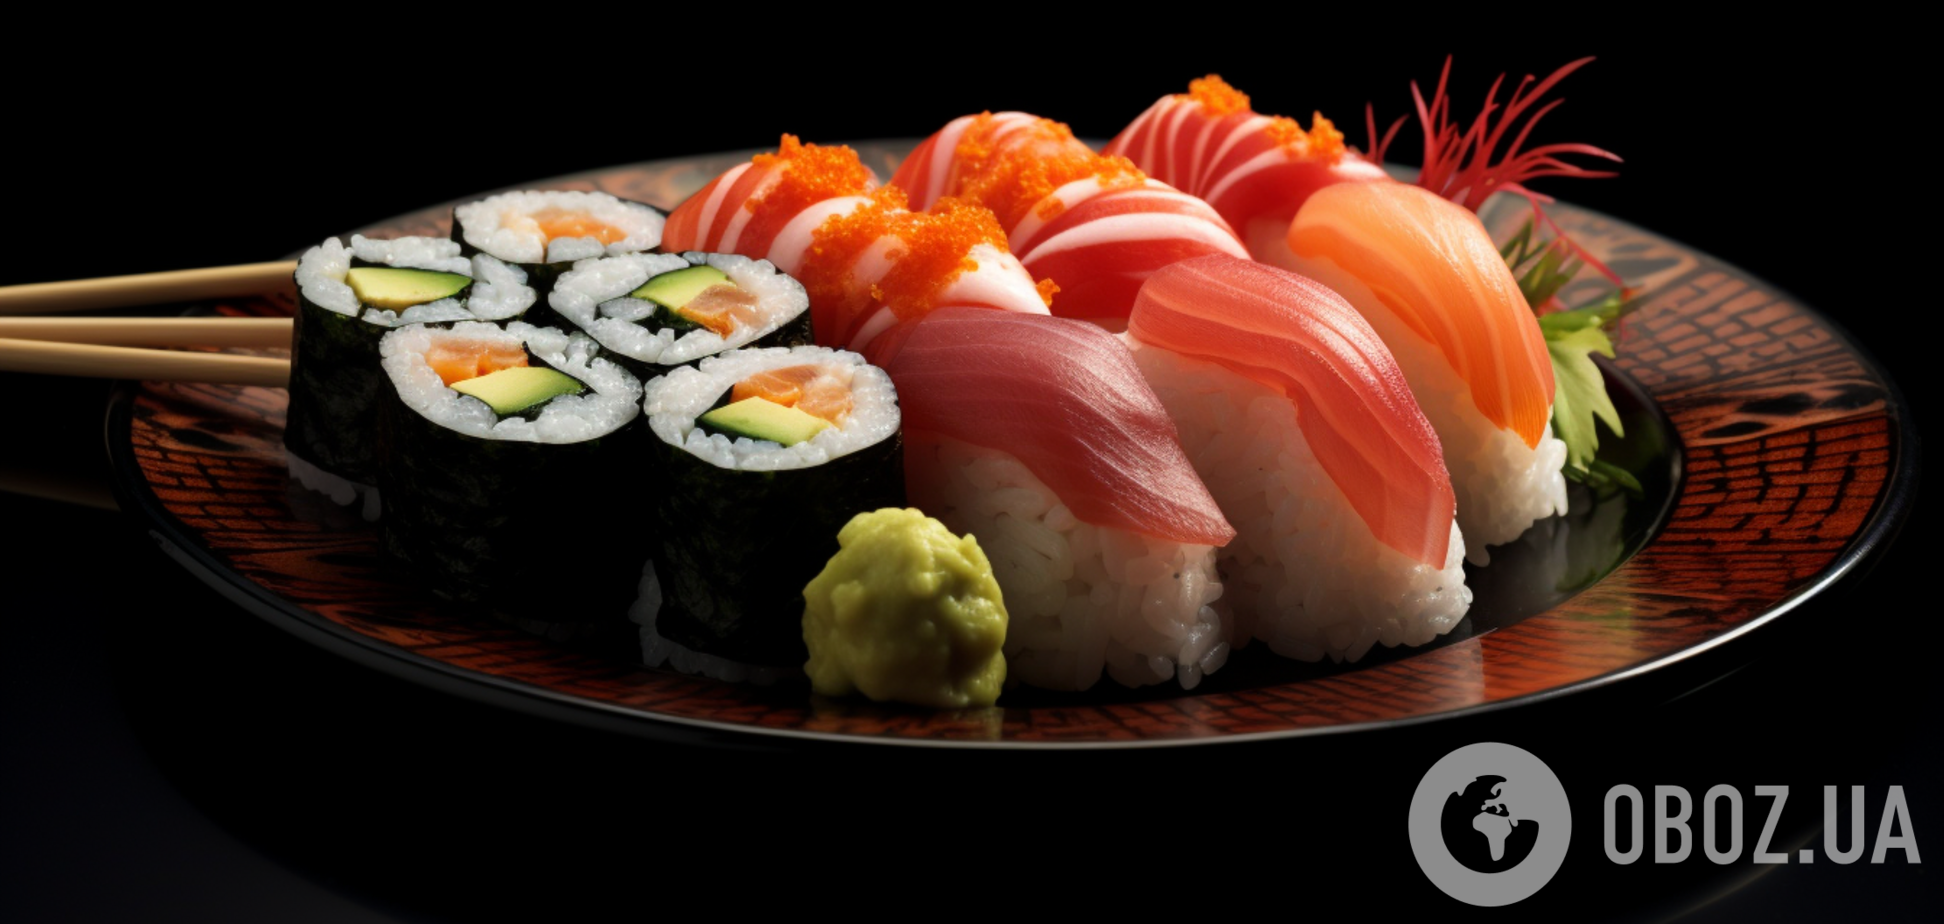 Як треба їсти суші: правила етикету, які знають не всі 